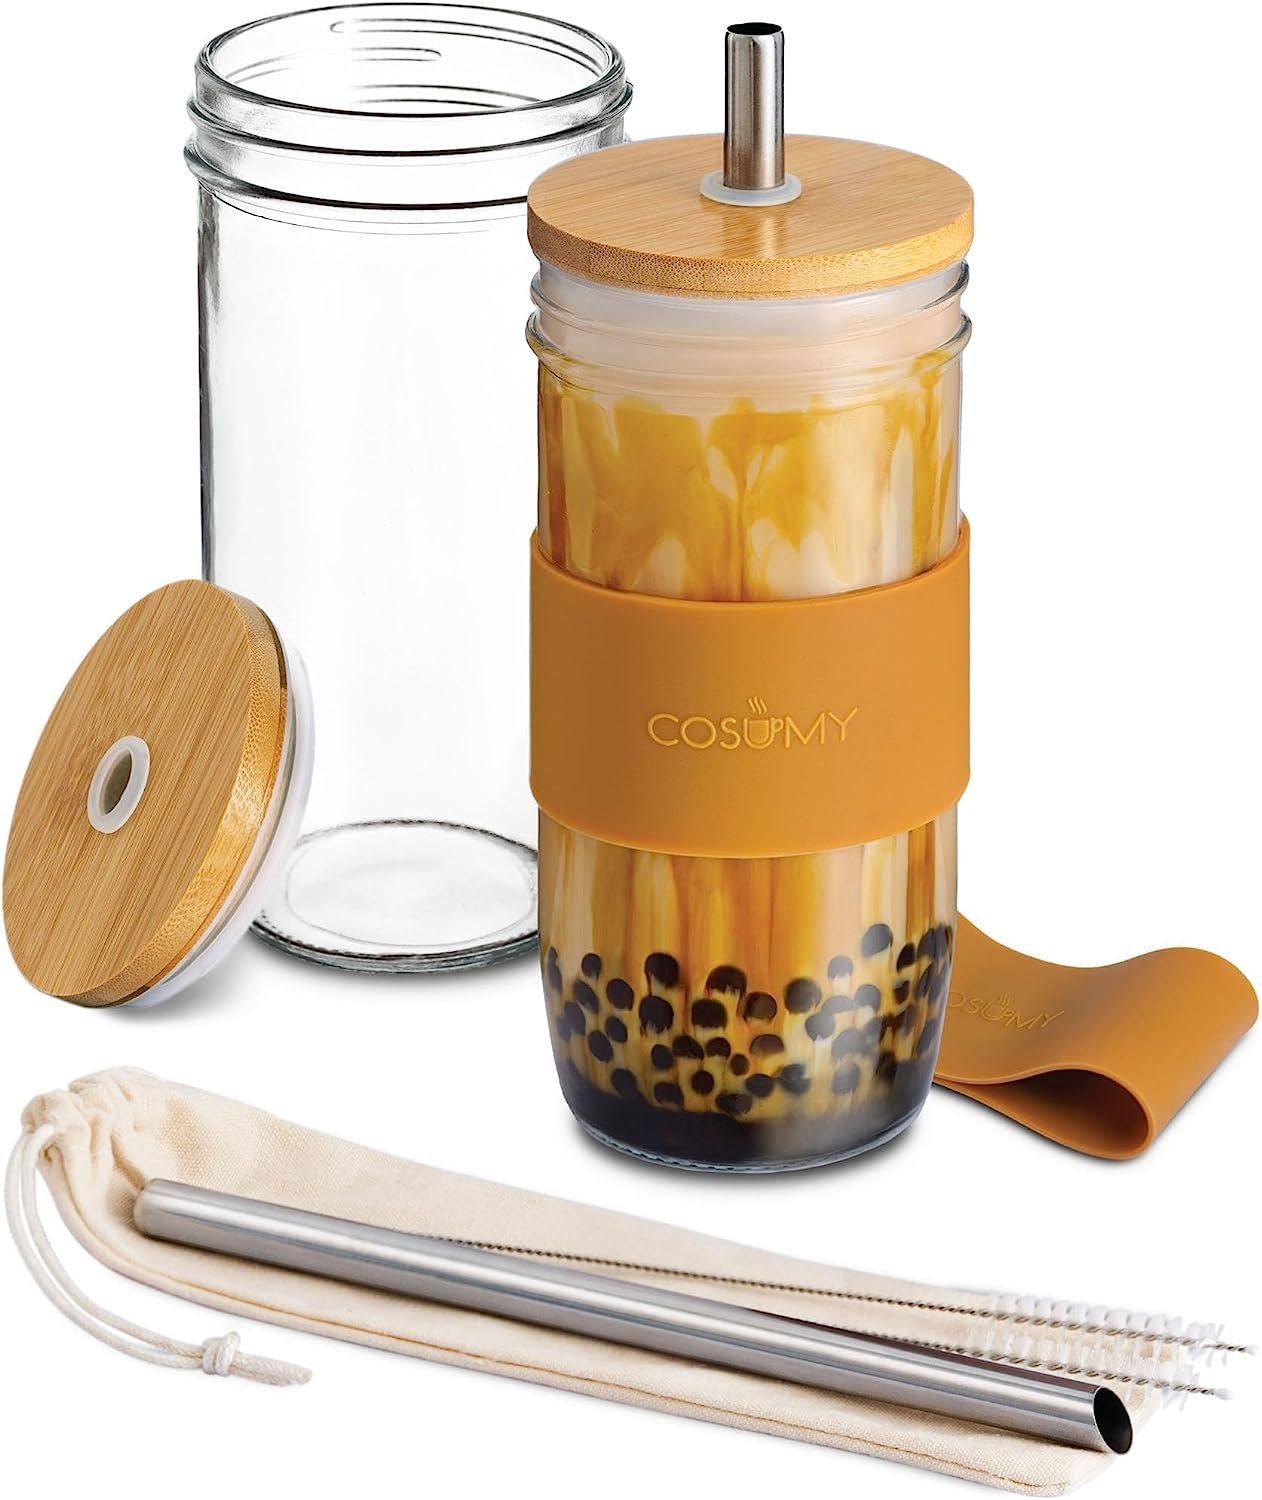 Cosumy Gläser-Set 2 Bubble Tea Becher mit Strohhalm und Bambusdeckel, Glas, 2er Set Glasbecher - 720ml - Wiederverwendbar - Spülmaschinenfest